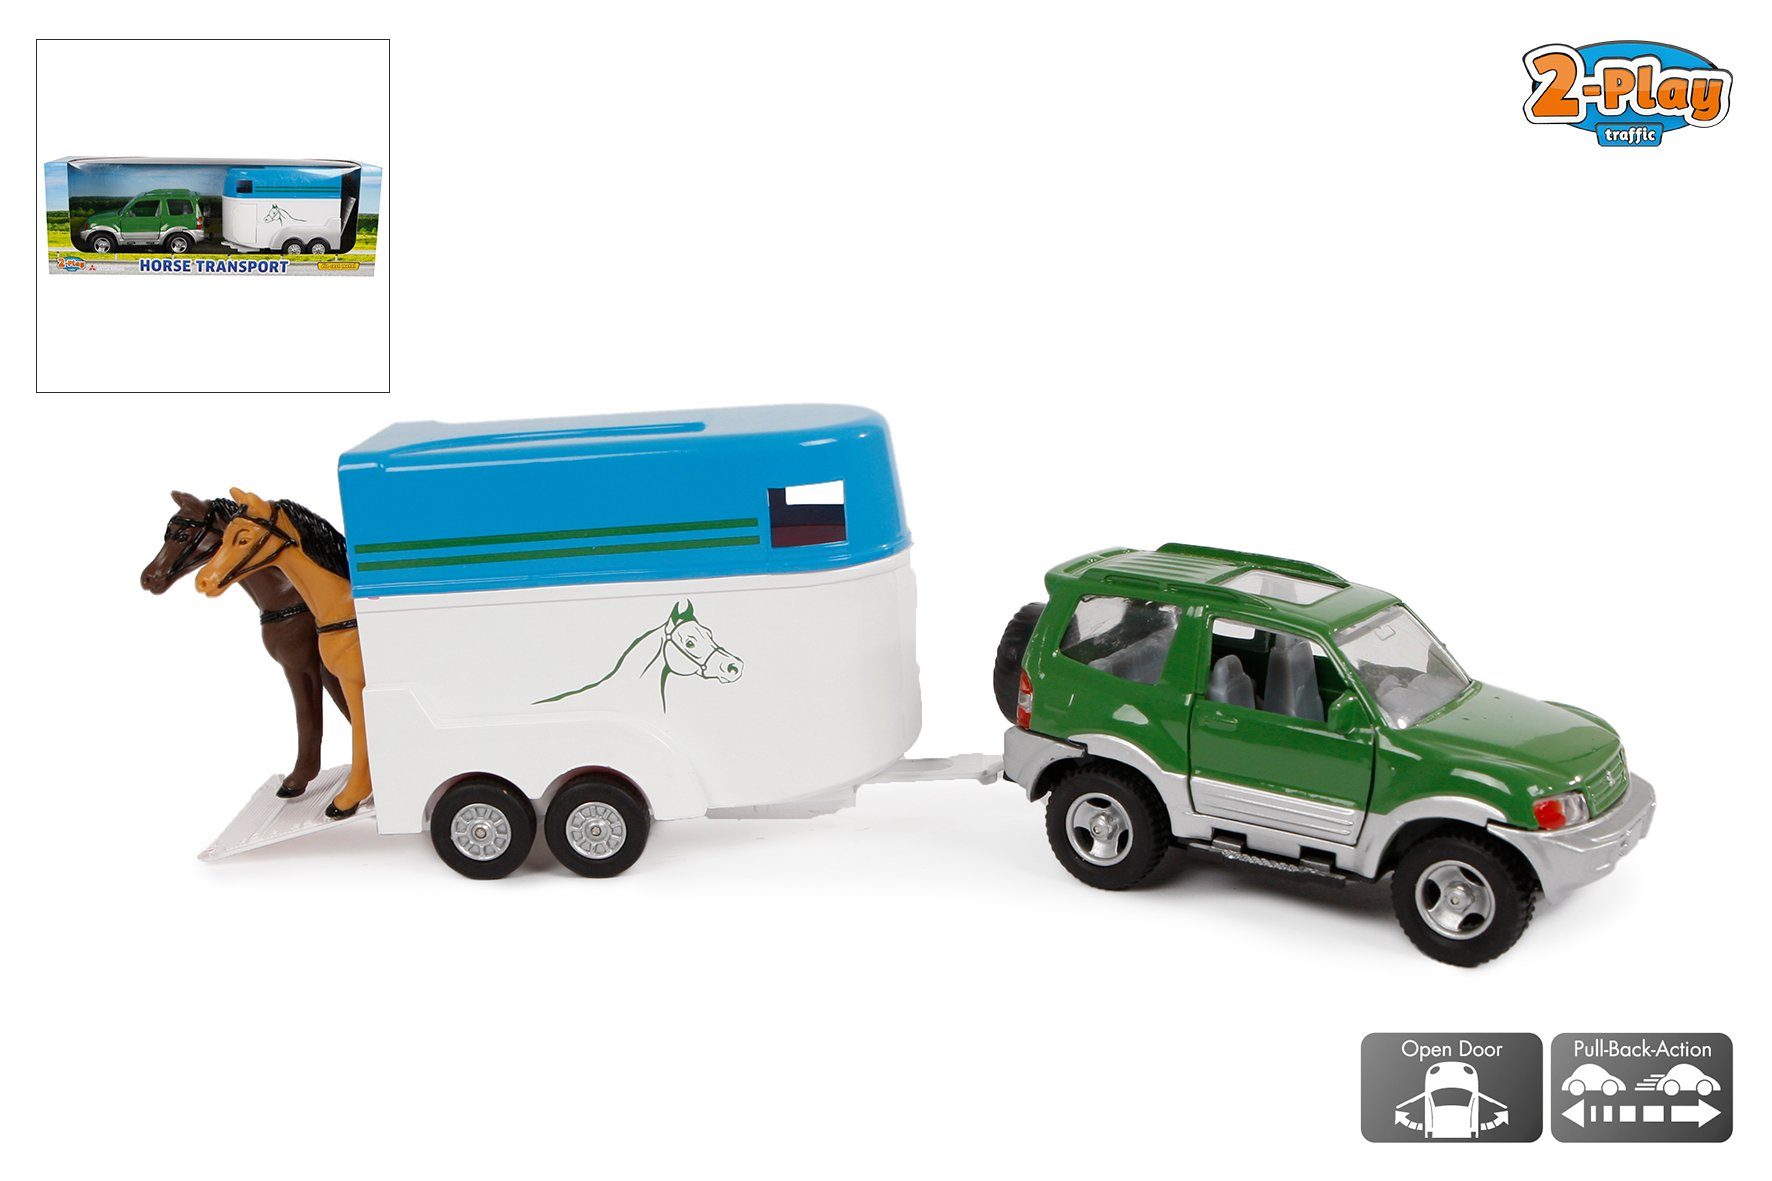 Kids Globe Spielwelt 2-Play Die Cast Geländewagen mit Pferdeanhänger inkl.  2 Pferde, Auto